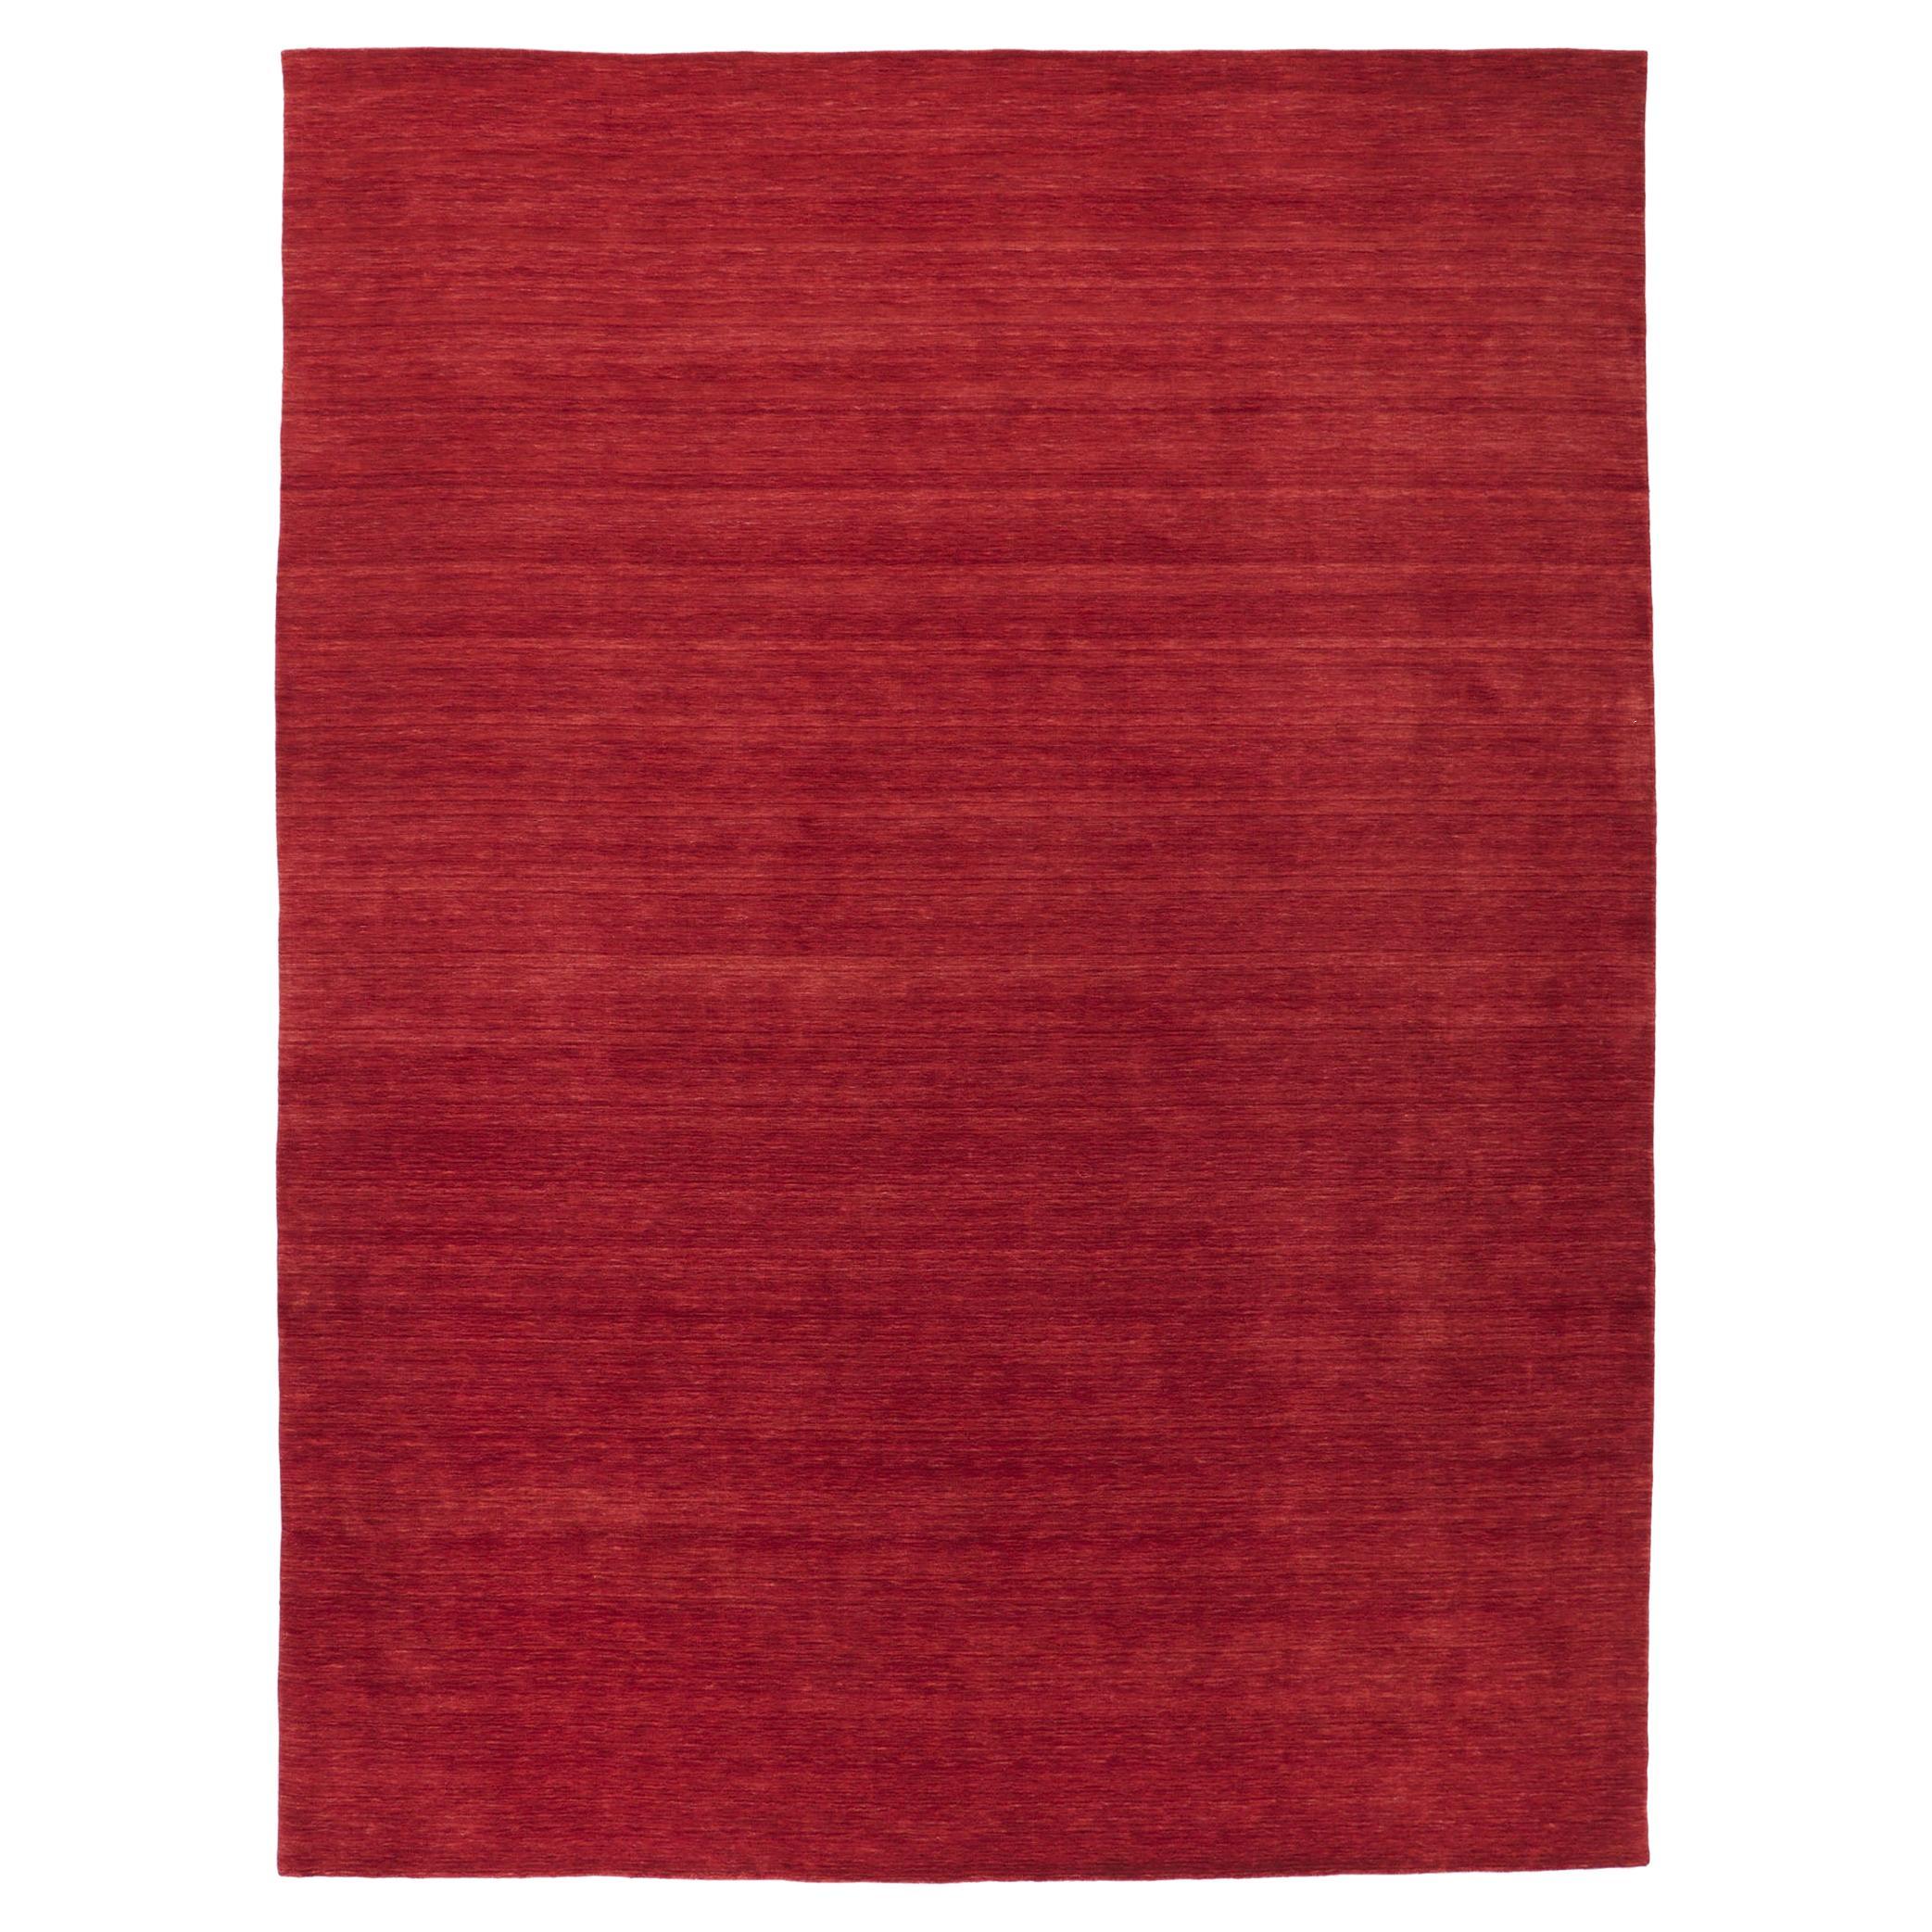 Zeitgenössischer roter Teppich im modernen Stil